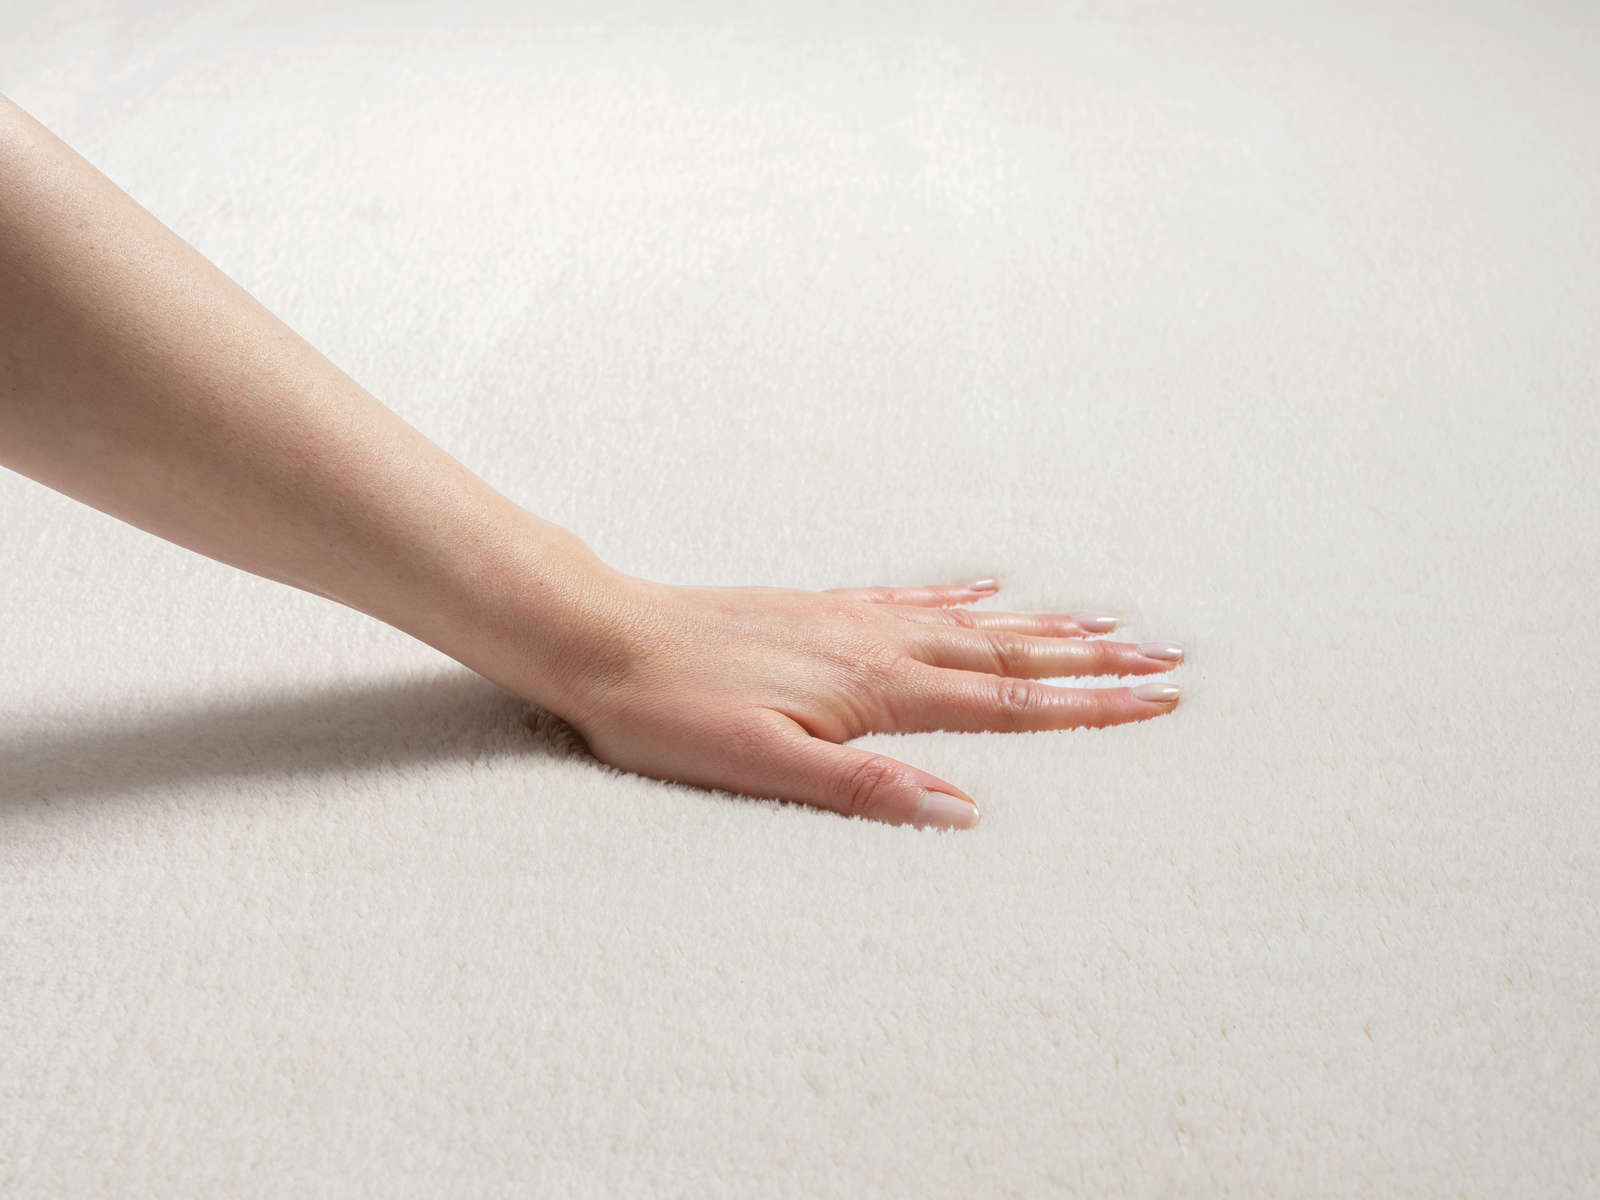             Fashionable high pile carpet in cream - 340 x 240 cm
        